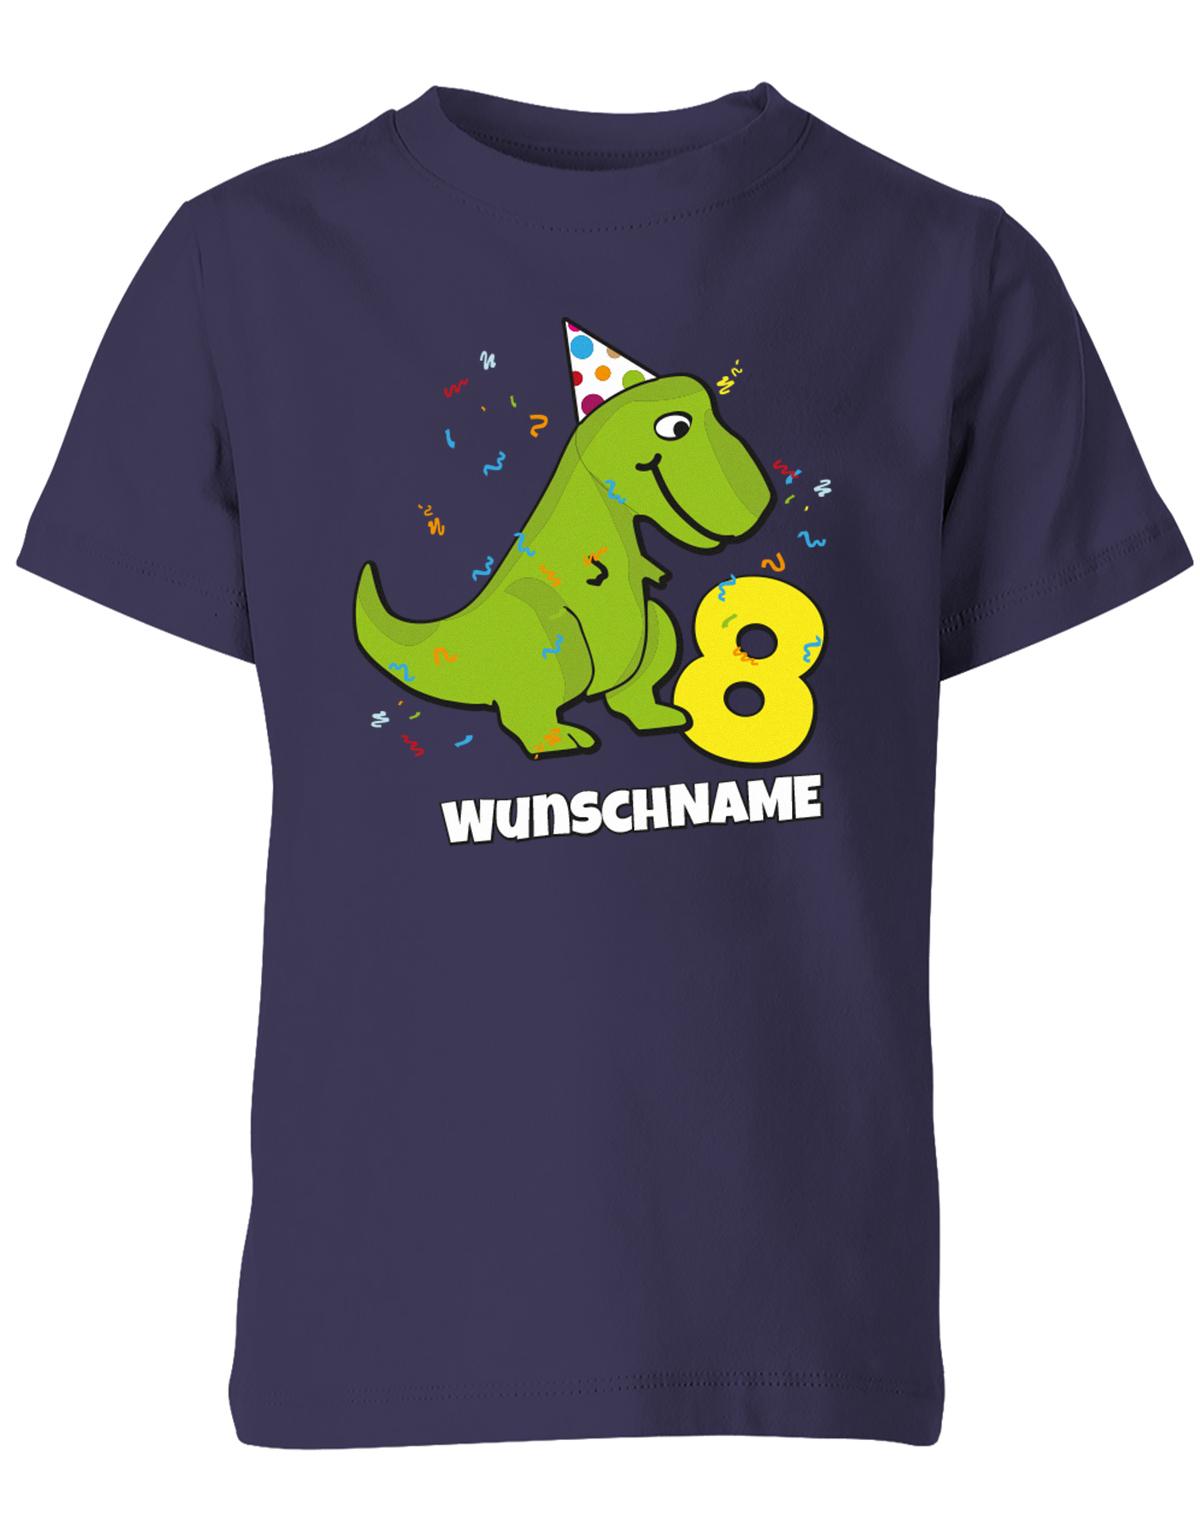 ich-bin-8-Dinosaurier-t-rex-wunschname-geburtstag-kinder-shirt-navy